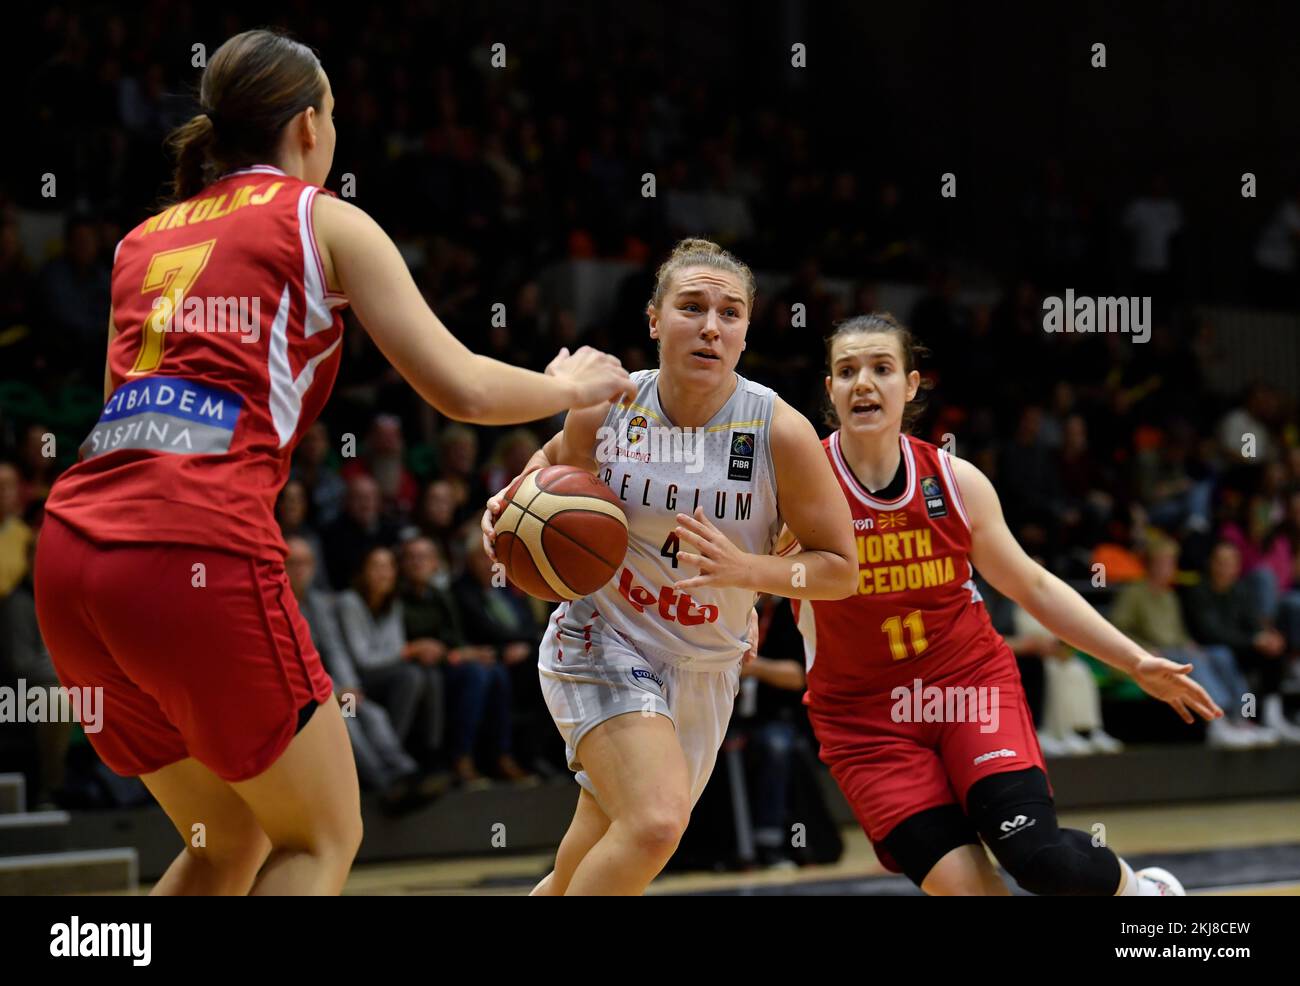 Elise Ramette, de Belgique, contrôle le ballon lors d'un match de basket-ball  entre l'équipe nationale belge les Cats belges et la Macédoine du Nord,  jeudi 24 novembre 2022 à Louvain, troisième match